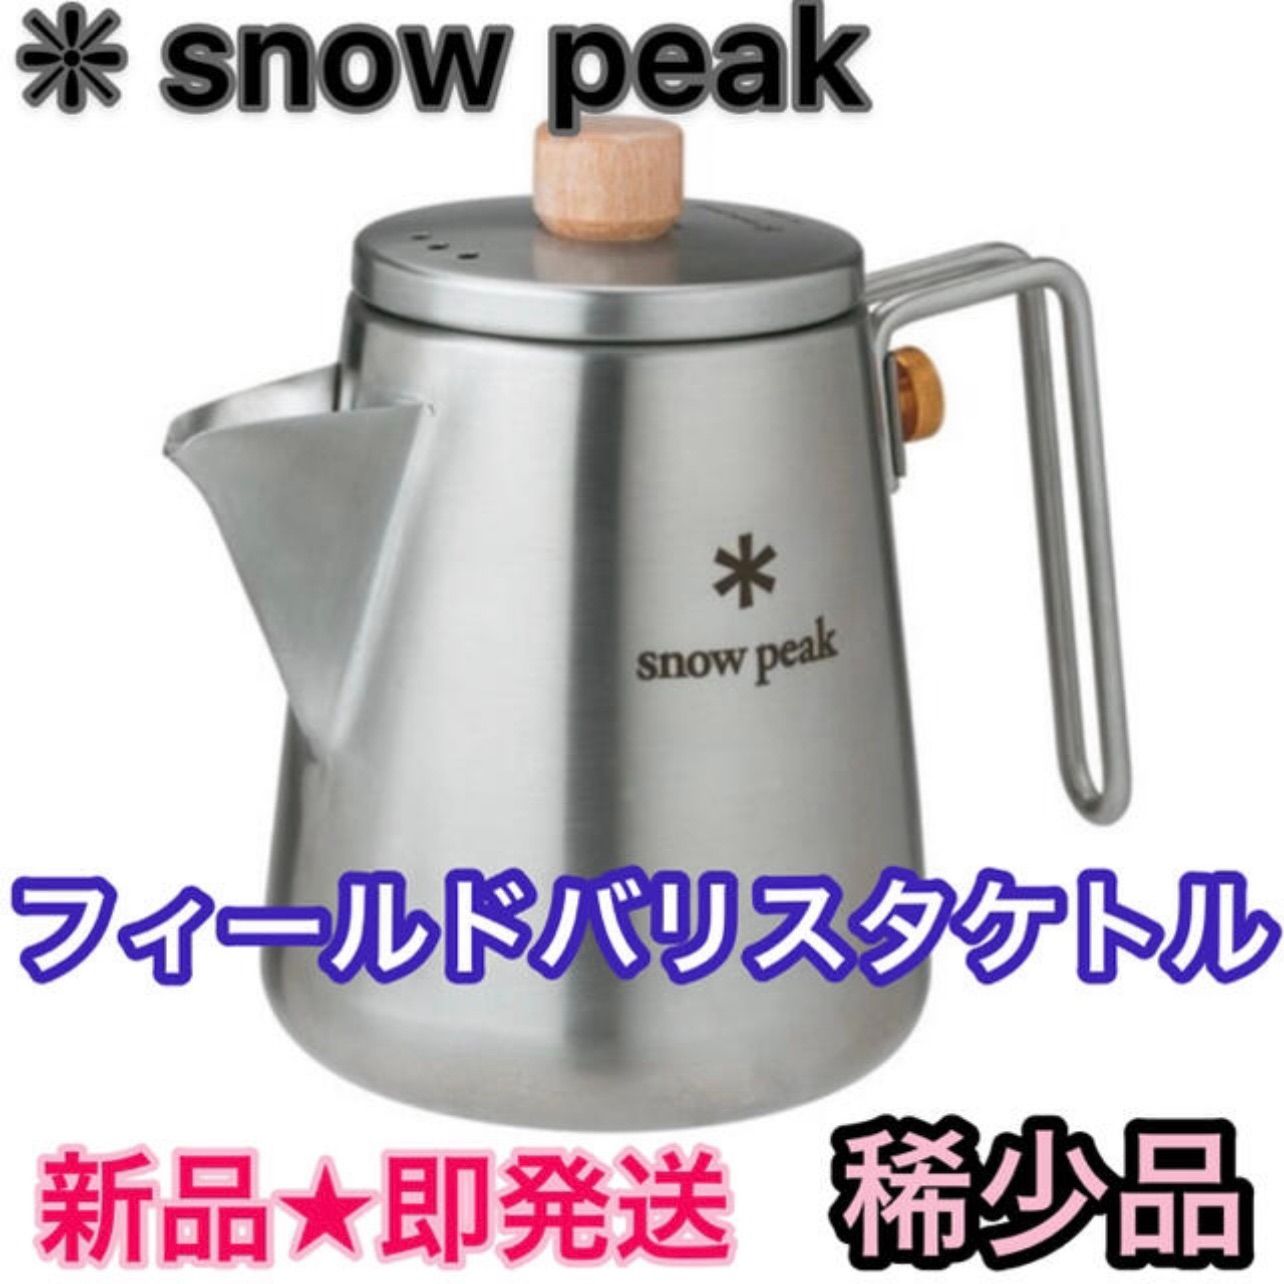 【値段通販】スノーピーク フィールドバリスタケトル snow peak 調理器具